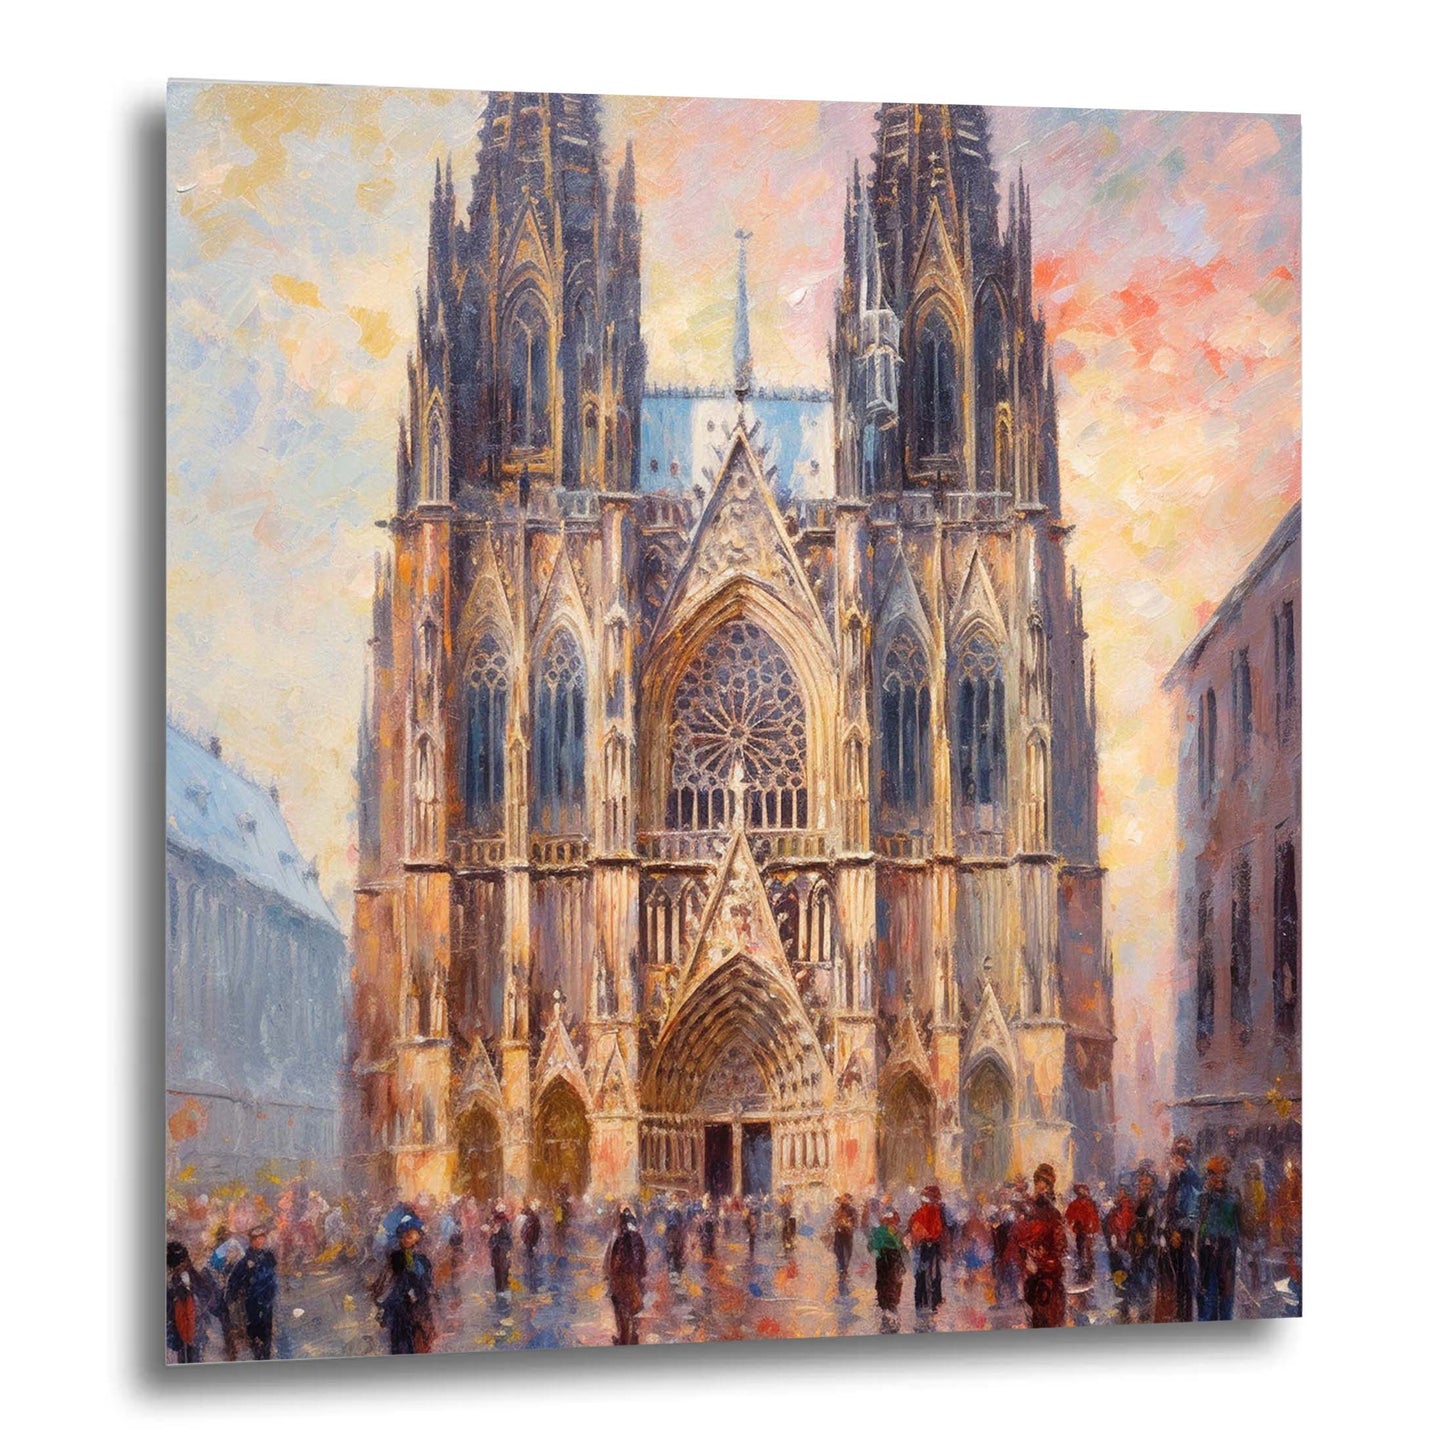 Kölner Dom - Wandbild in der Stilrichtung des Impressionismus